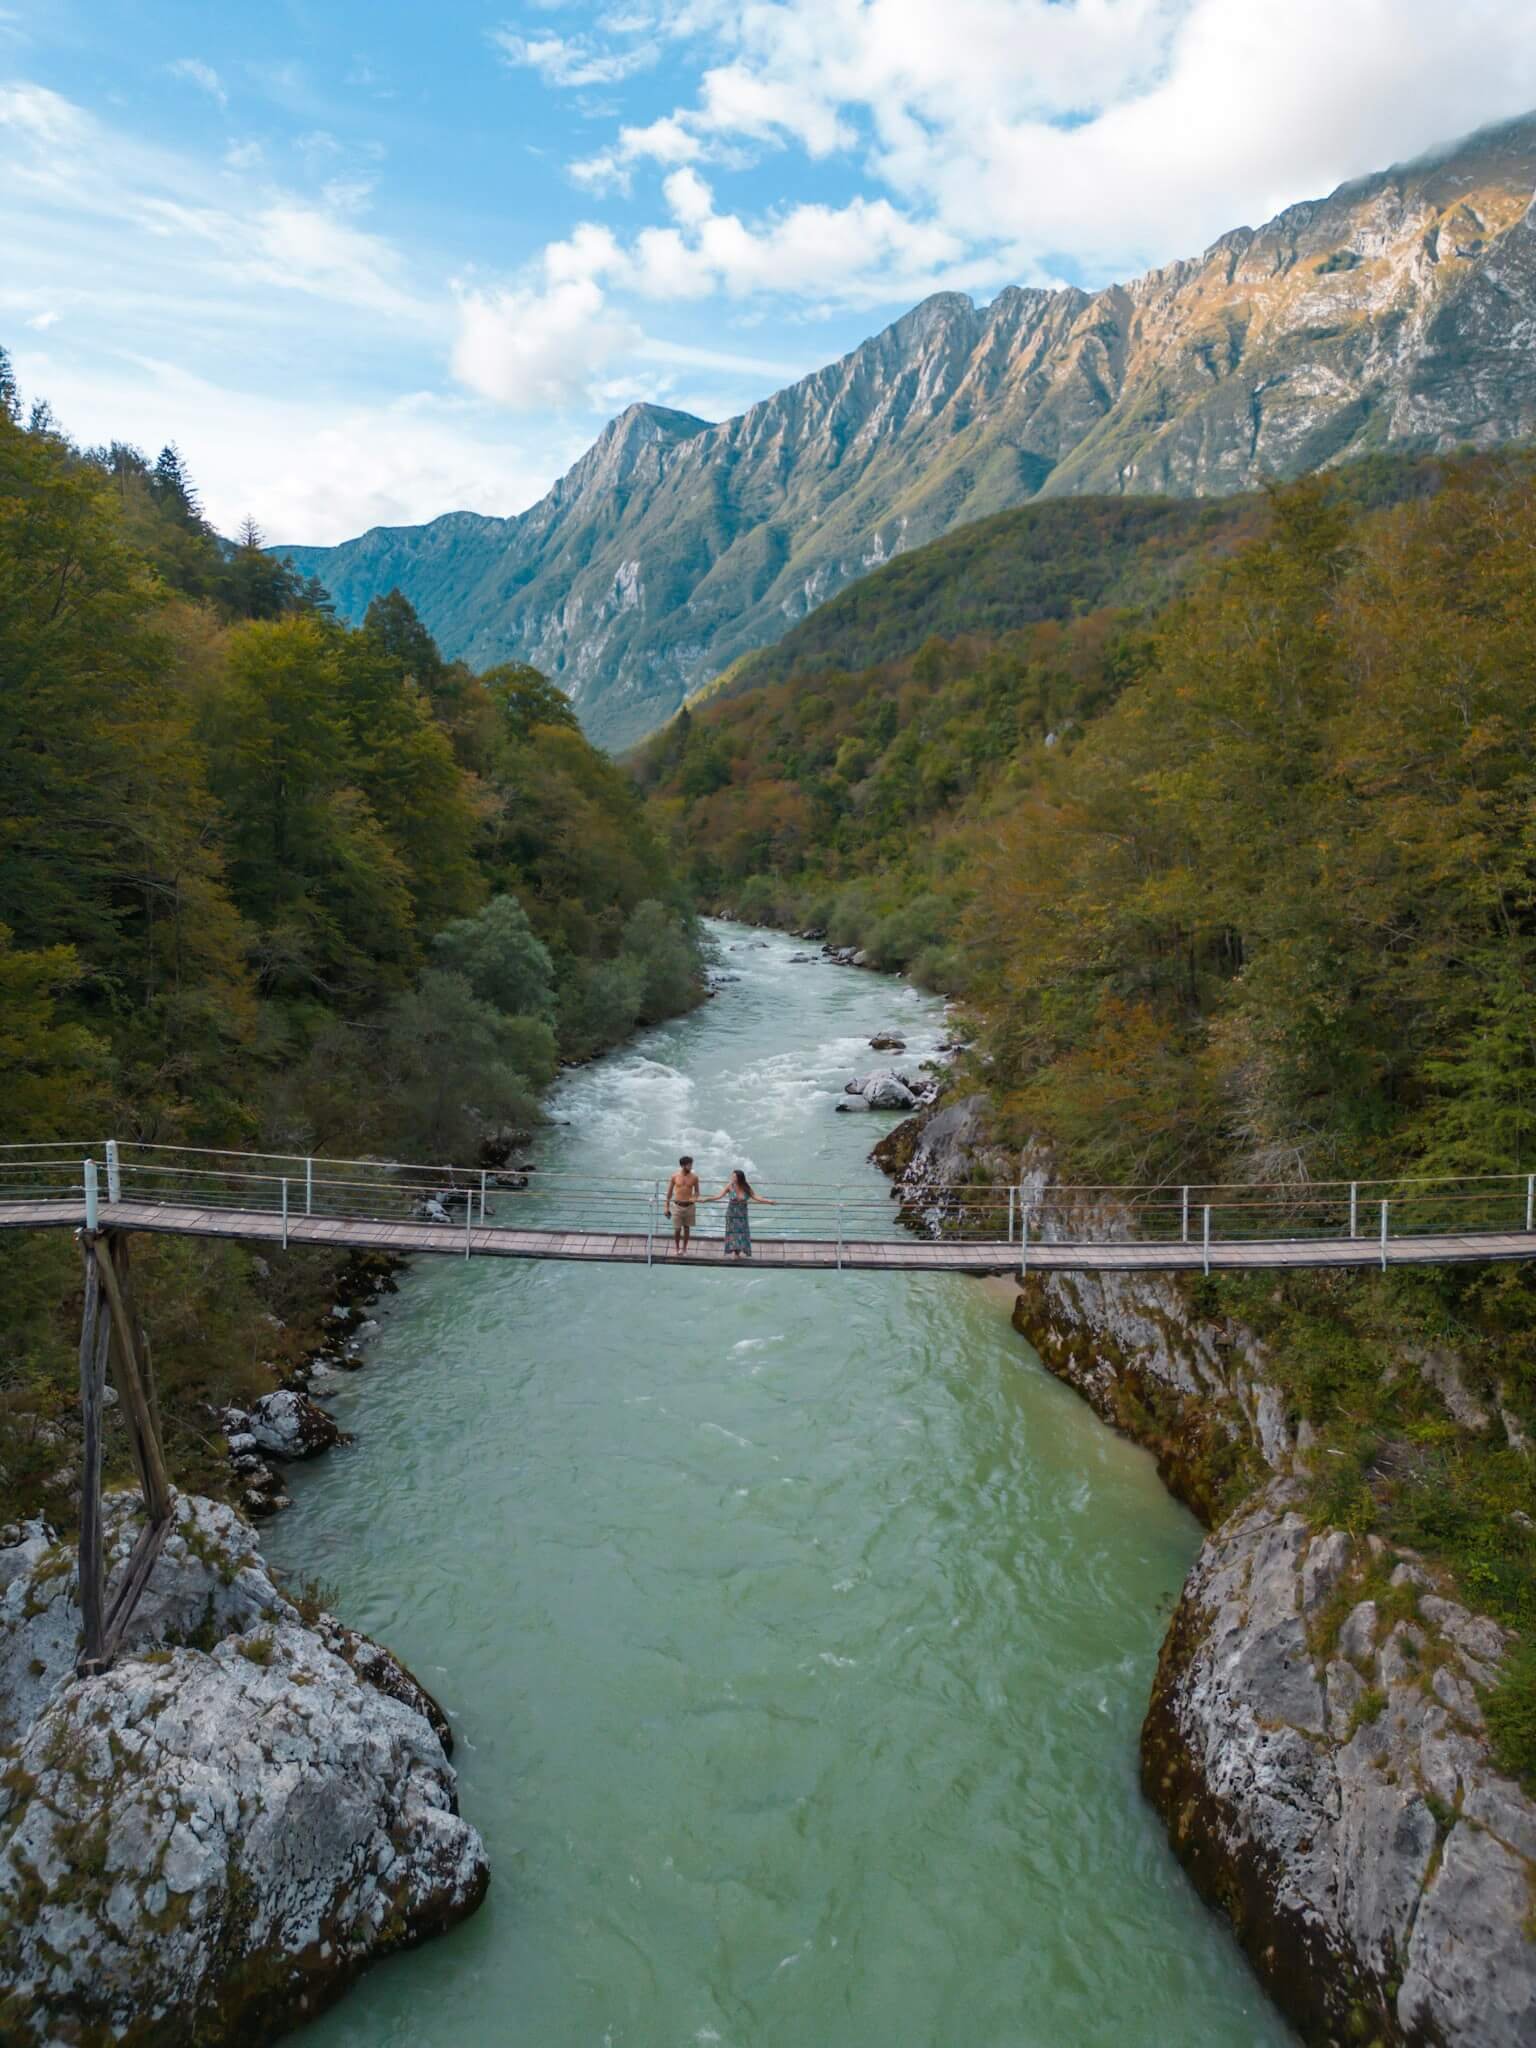 Napolean's bridge, suspension bridge in Slovenia